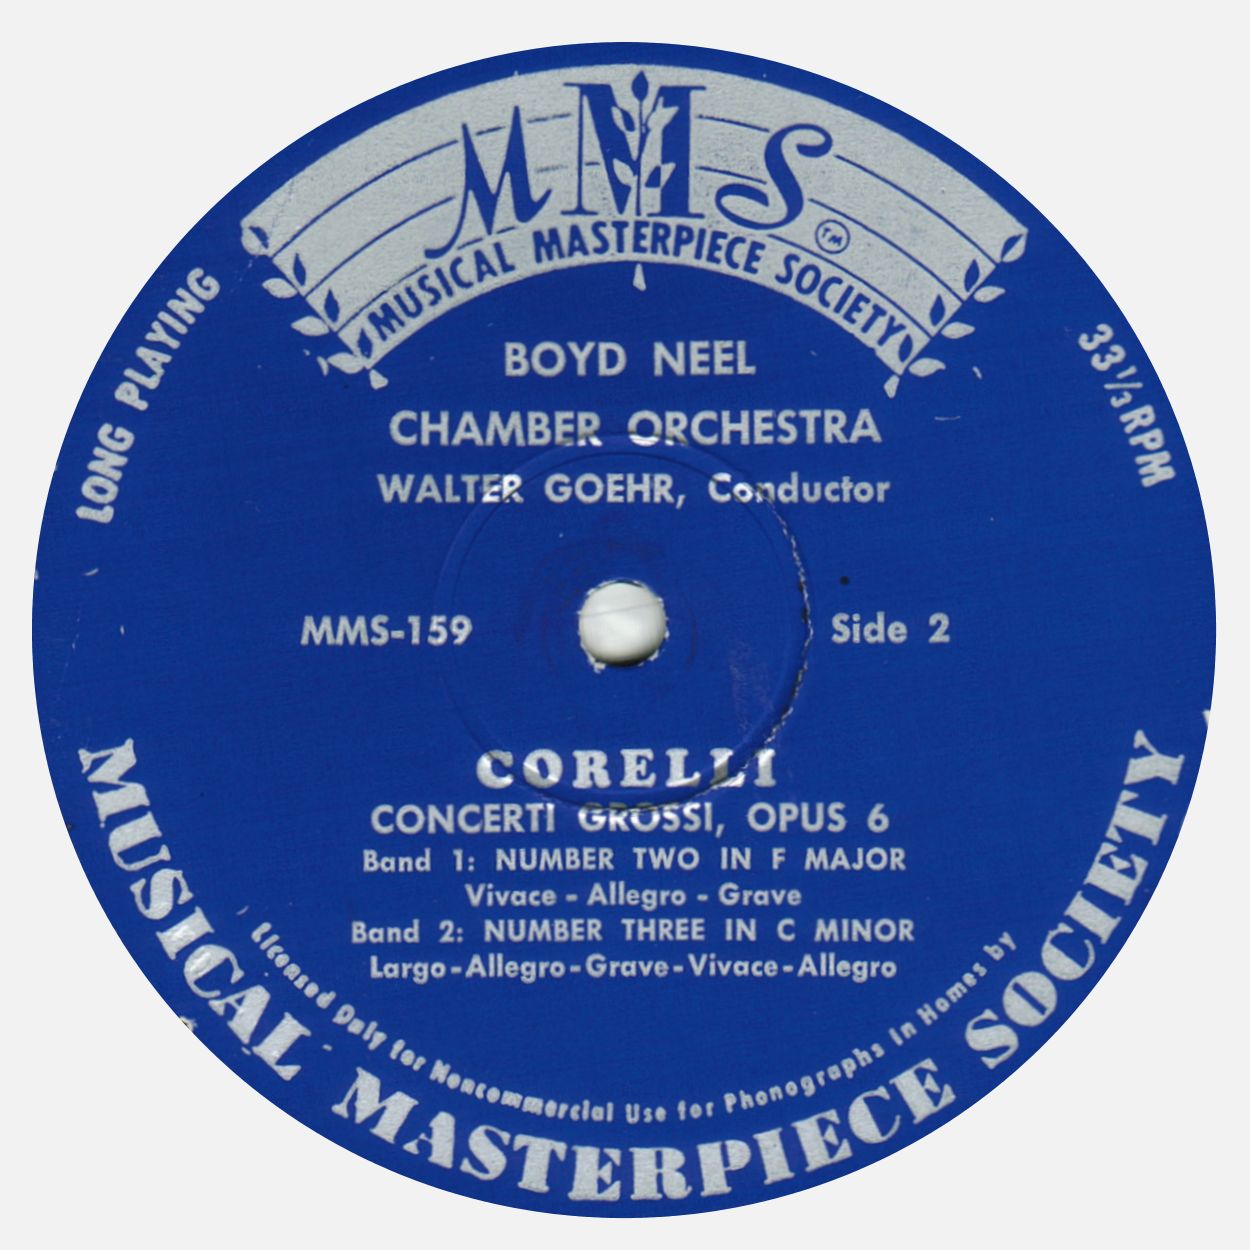 Étiquette verso du disque «Musical Masterpiece Society» MMS-159, cliquer pour une vue agrandie